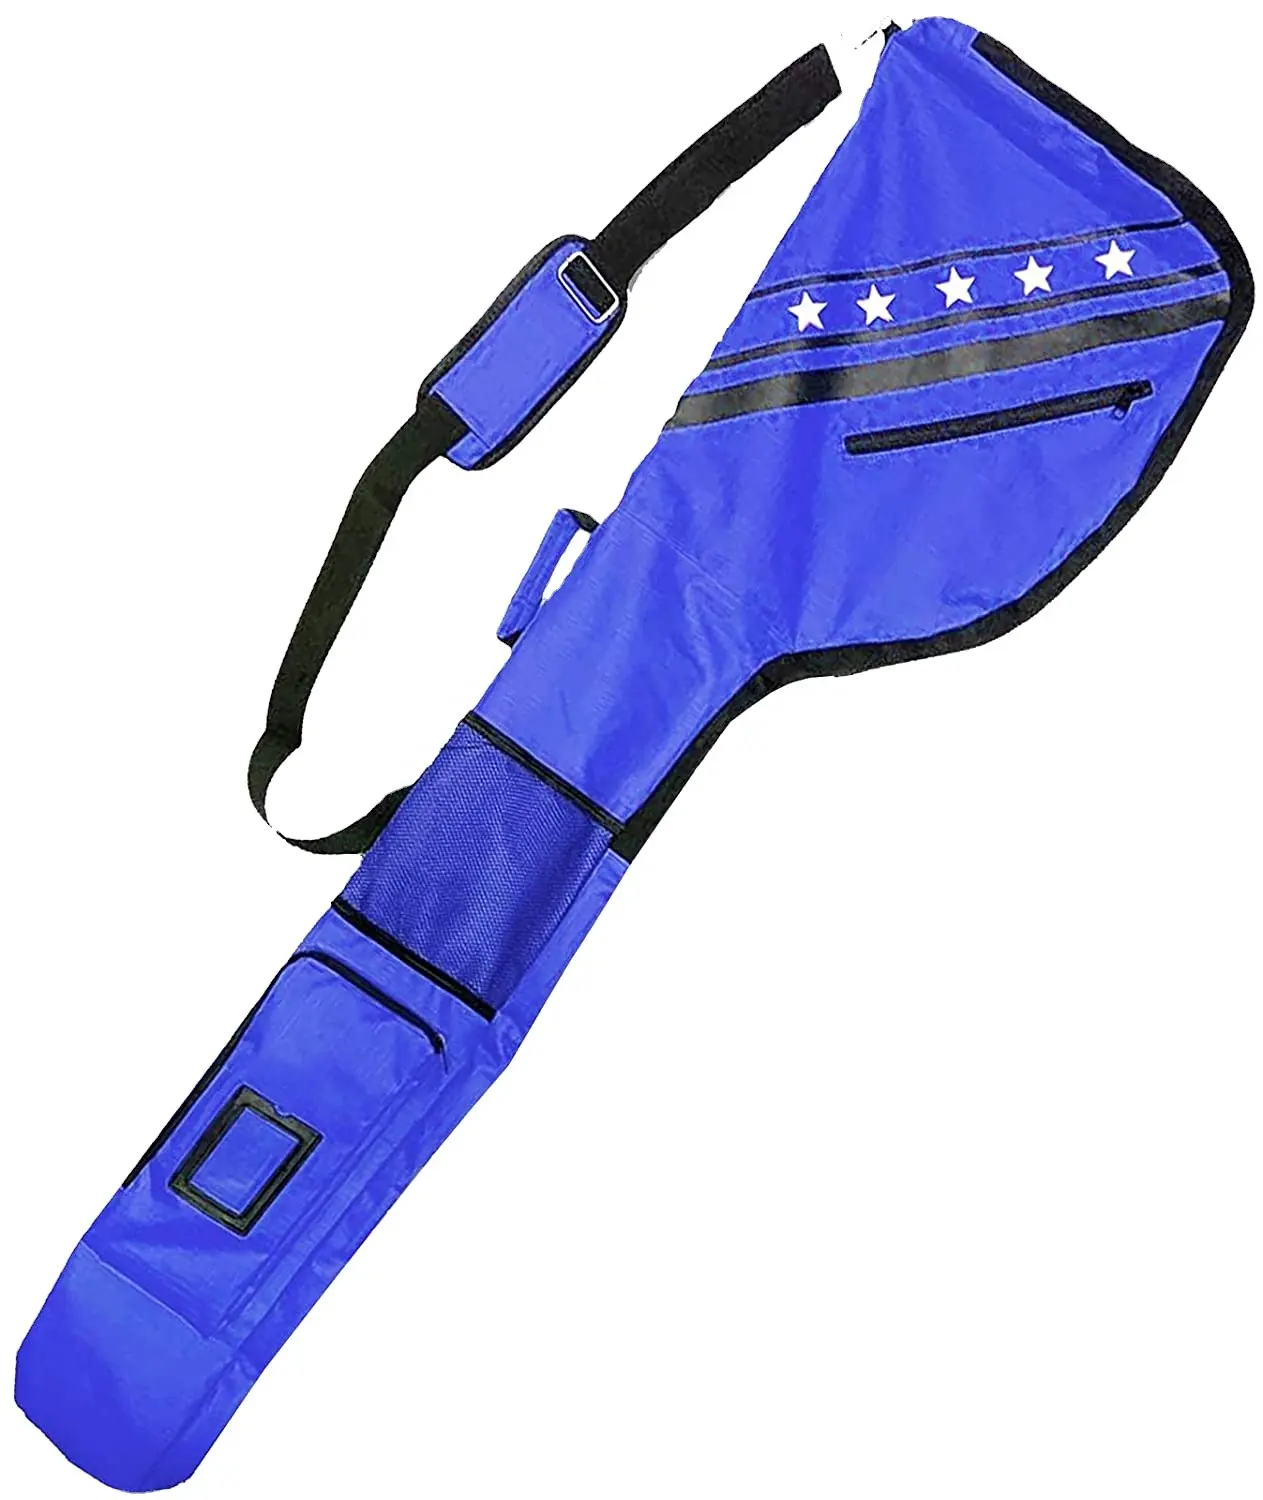 Sıcak satış su geçirmez Golf pazar kalem çantası kulübü tekerlekler organizatör ile en iyi fiyat ile özel Logo renk tasarım baskı